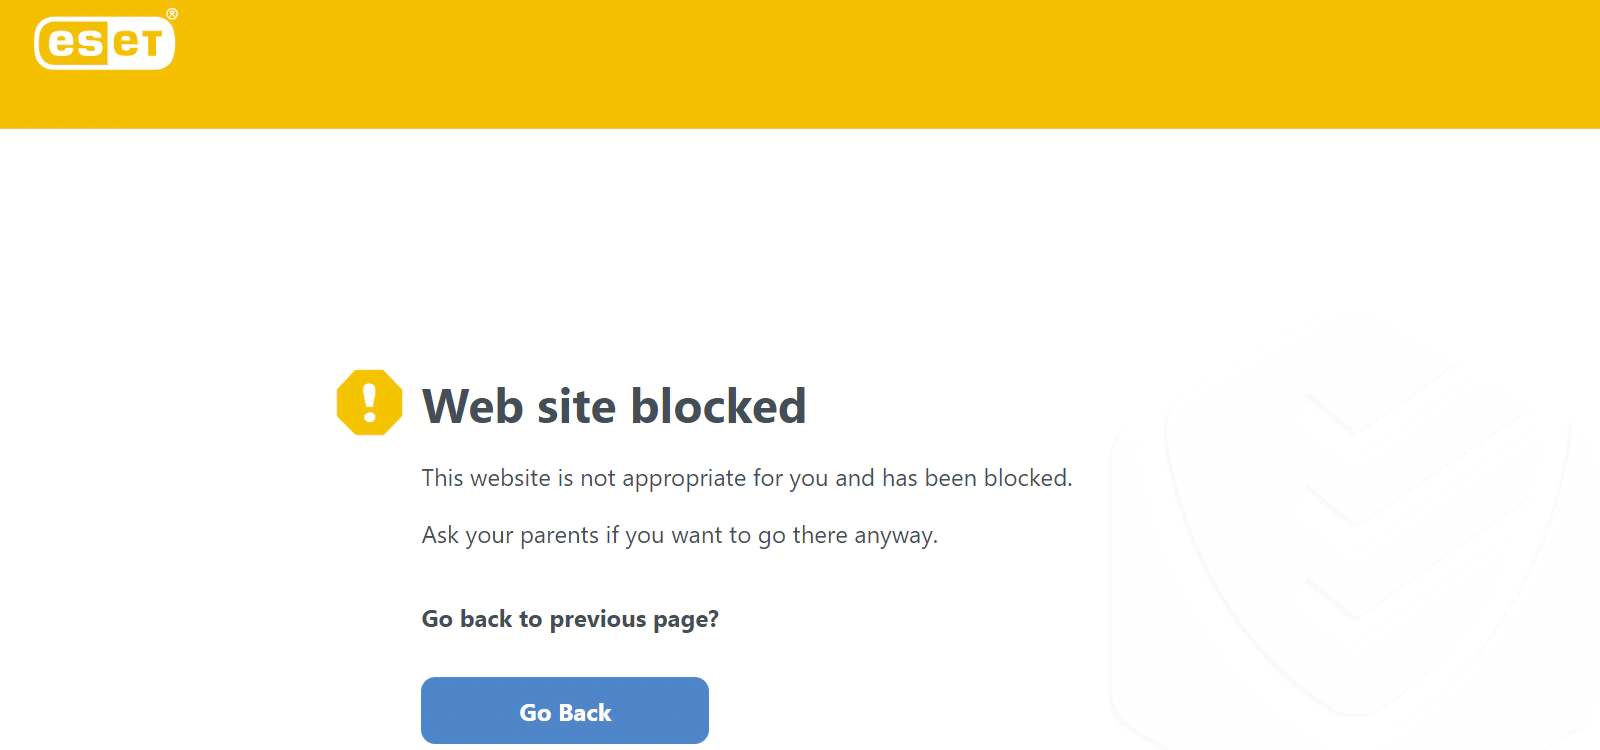 
Ventana de bloqueo de páginas web de ESET